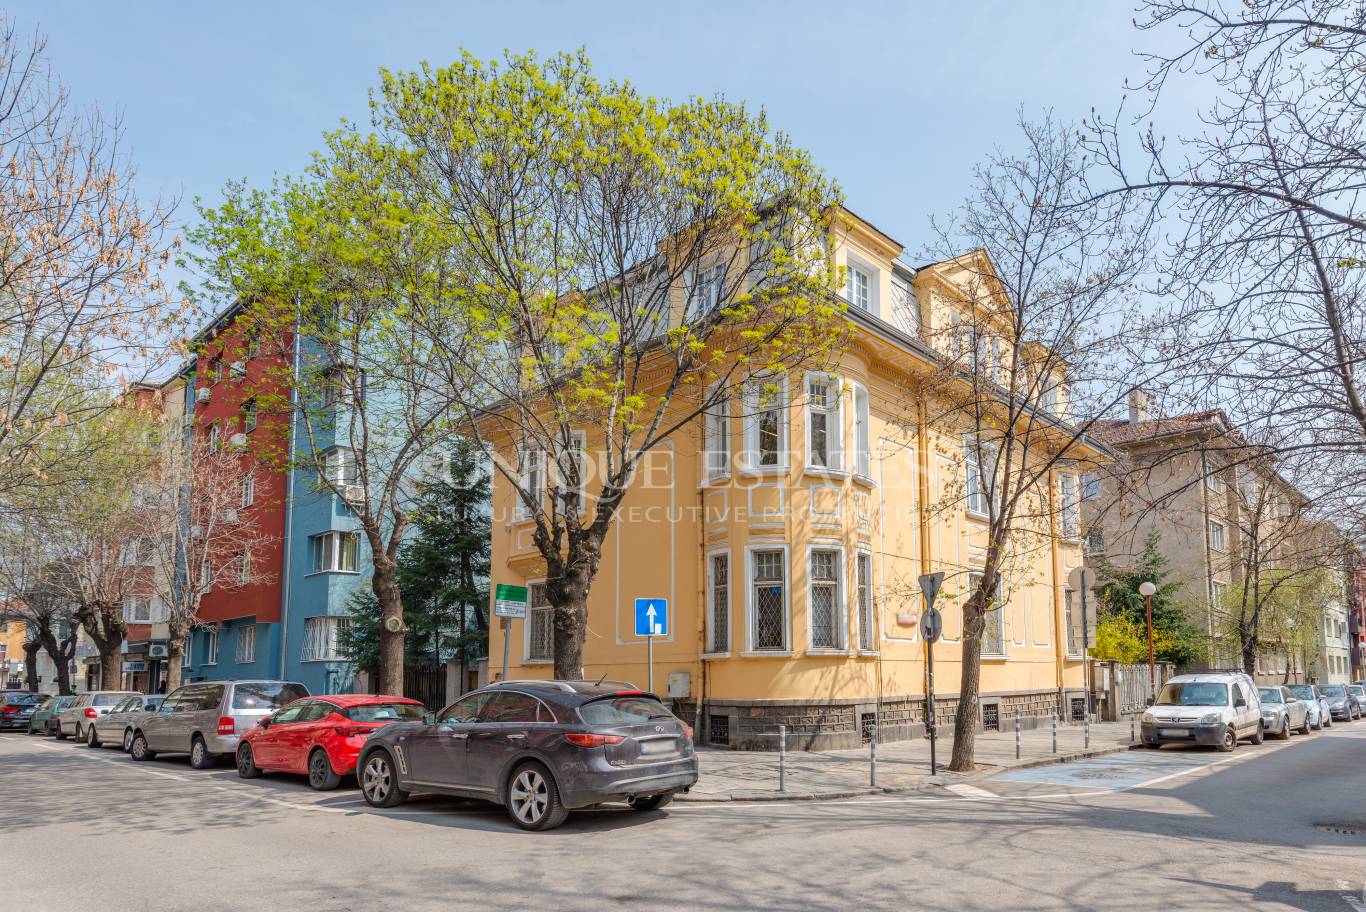 Офис под наем в София, Докторска градина - код на имота: K10950 - image 1